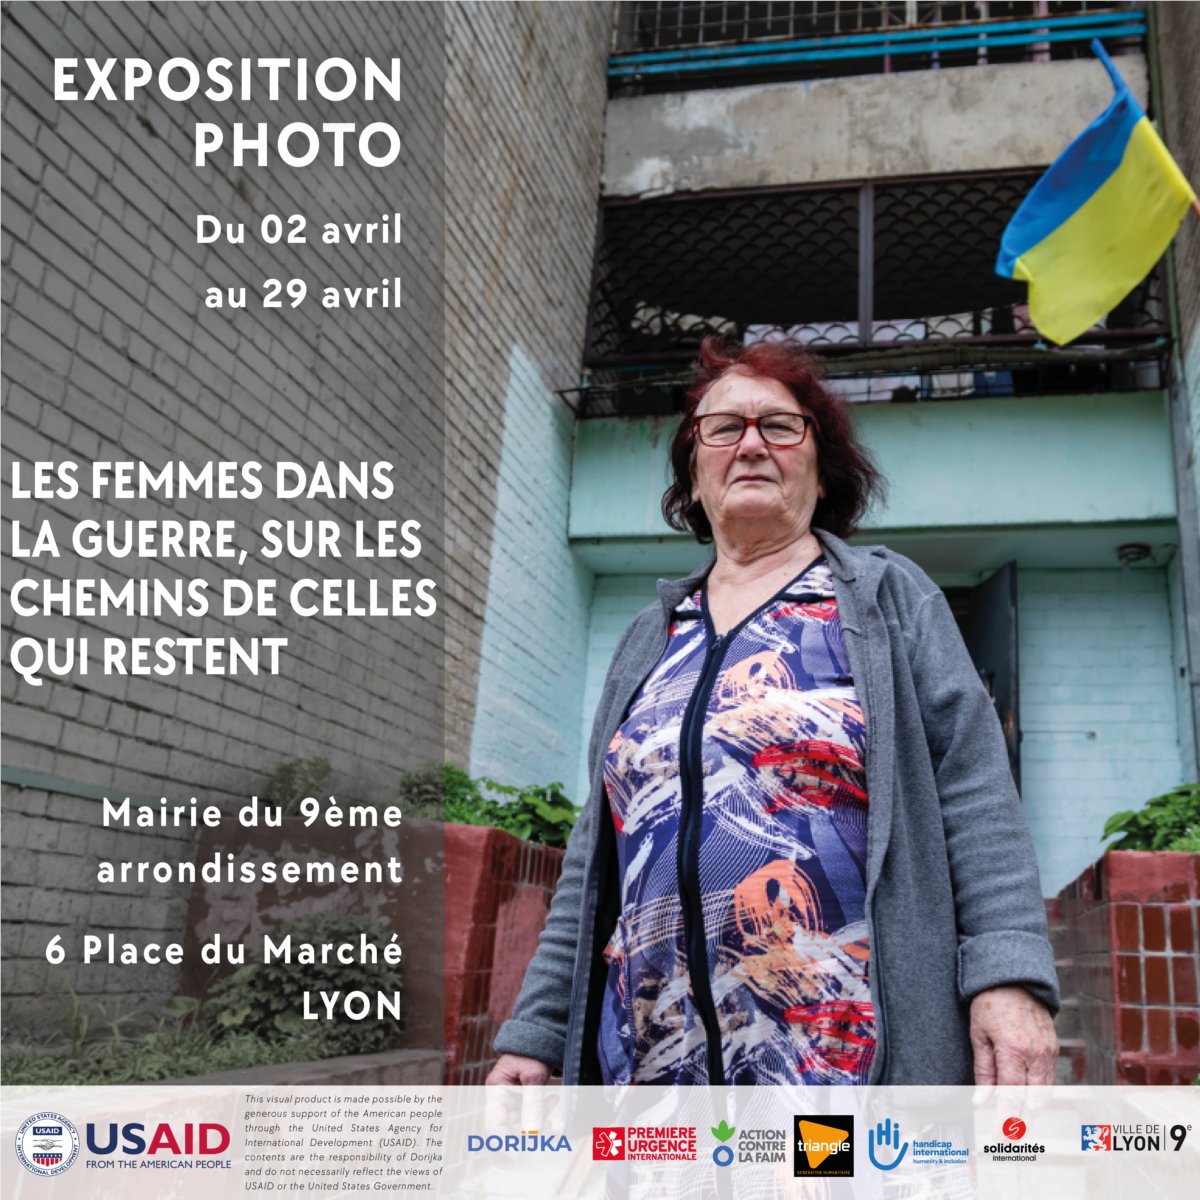 #TGH vous invite à venir découvrir l'exposition Consortium #Dorijka « 𝗟𝗲𝘀 𝗳𝗲𝗺𝗺𝗲𝘀 𝗱𝗮𝗻𝘀 𝗹𝗮 𝗴𝘂𝗲𝗿𝗿𝗲. 𝗦𝘂𝗿 𝗹𝗲𝘀 𝗰𝗵𝗲𝗺𝗶𝗻𝘀 𝗱𝗲 𝗰𝗲𝗹𝗹𝗲𝘀 𝗾𝘂𝗶 𝗿𝗲𝘀𝘁𝗲𝗻𝘁 » à @Mairie9Lyon 📅 A partir de mardi 2 avril à #Lyon 🚋 Métro Valmy